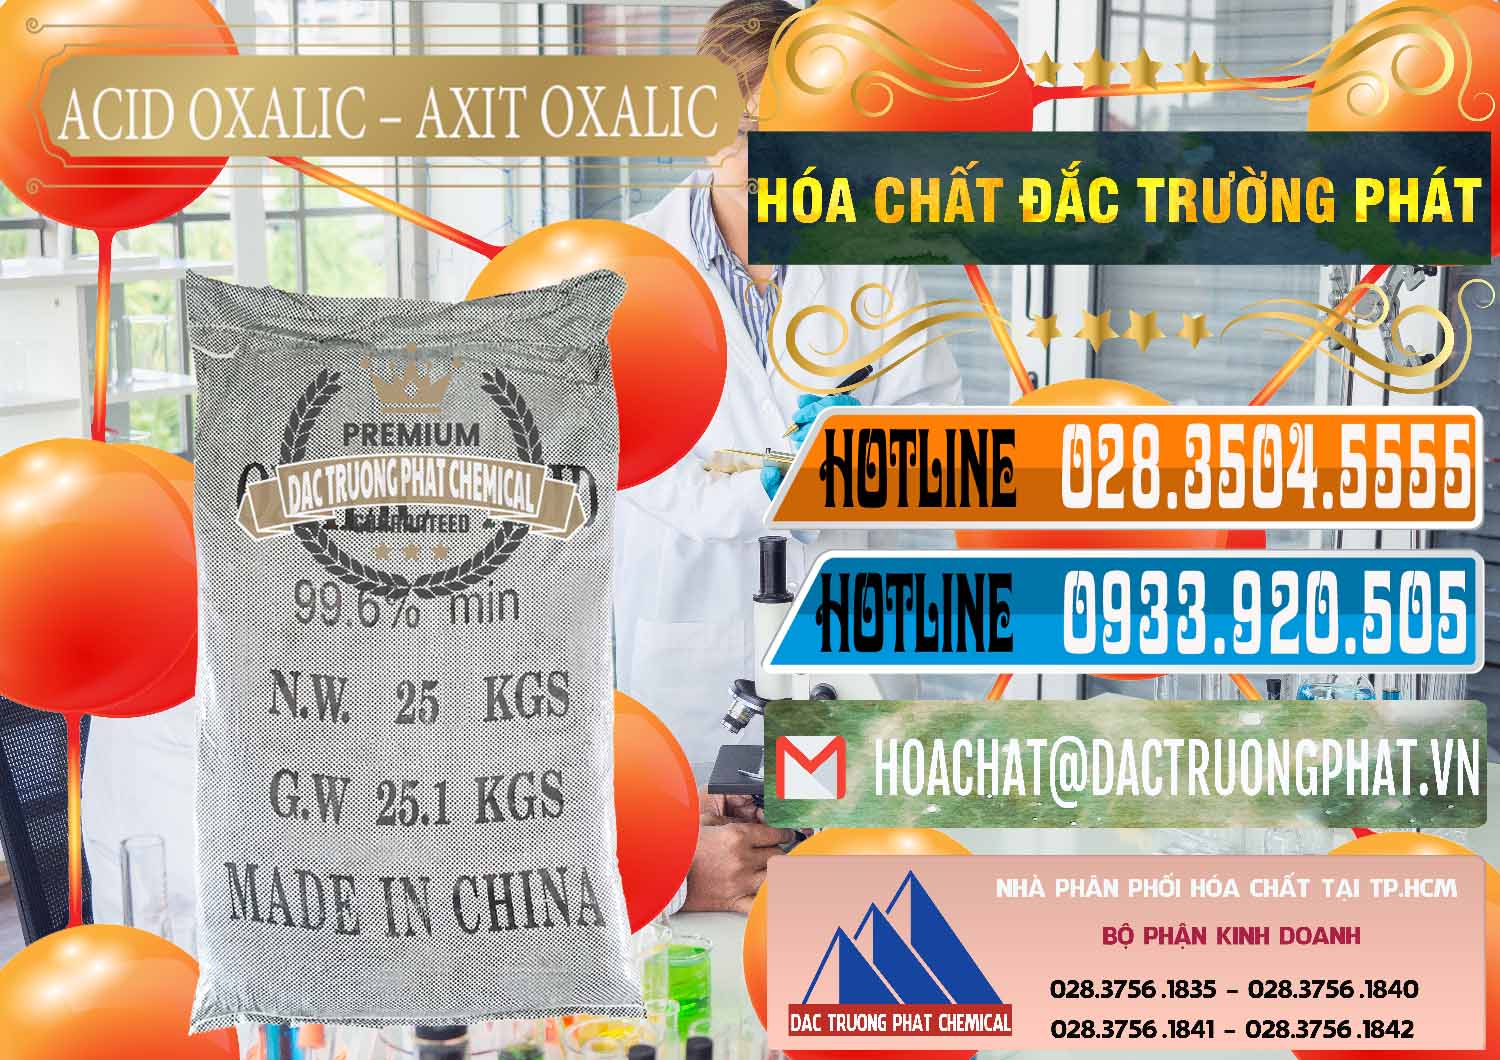 Cty chuyên cung ứng _ bán Acid Oxalic – Axit Oxalic 99.6% Trung Quốc China - 0014 - Cty chuyên nhập khẩu - cung cấp hóa chất tại TP.HCM - stmp.net